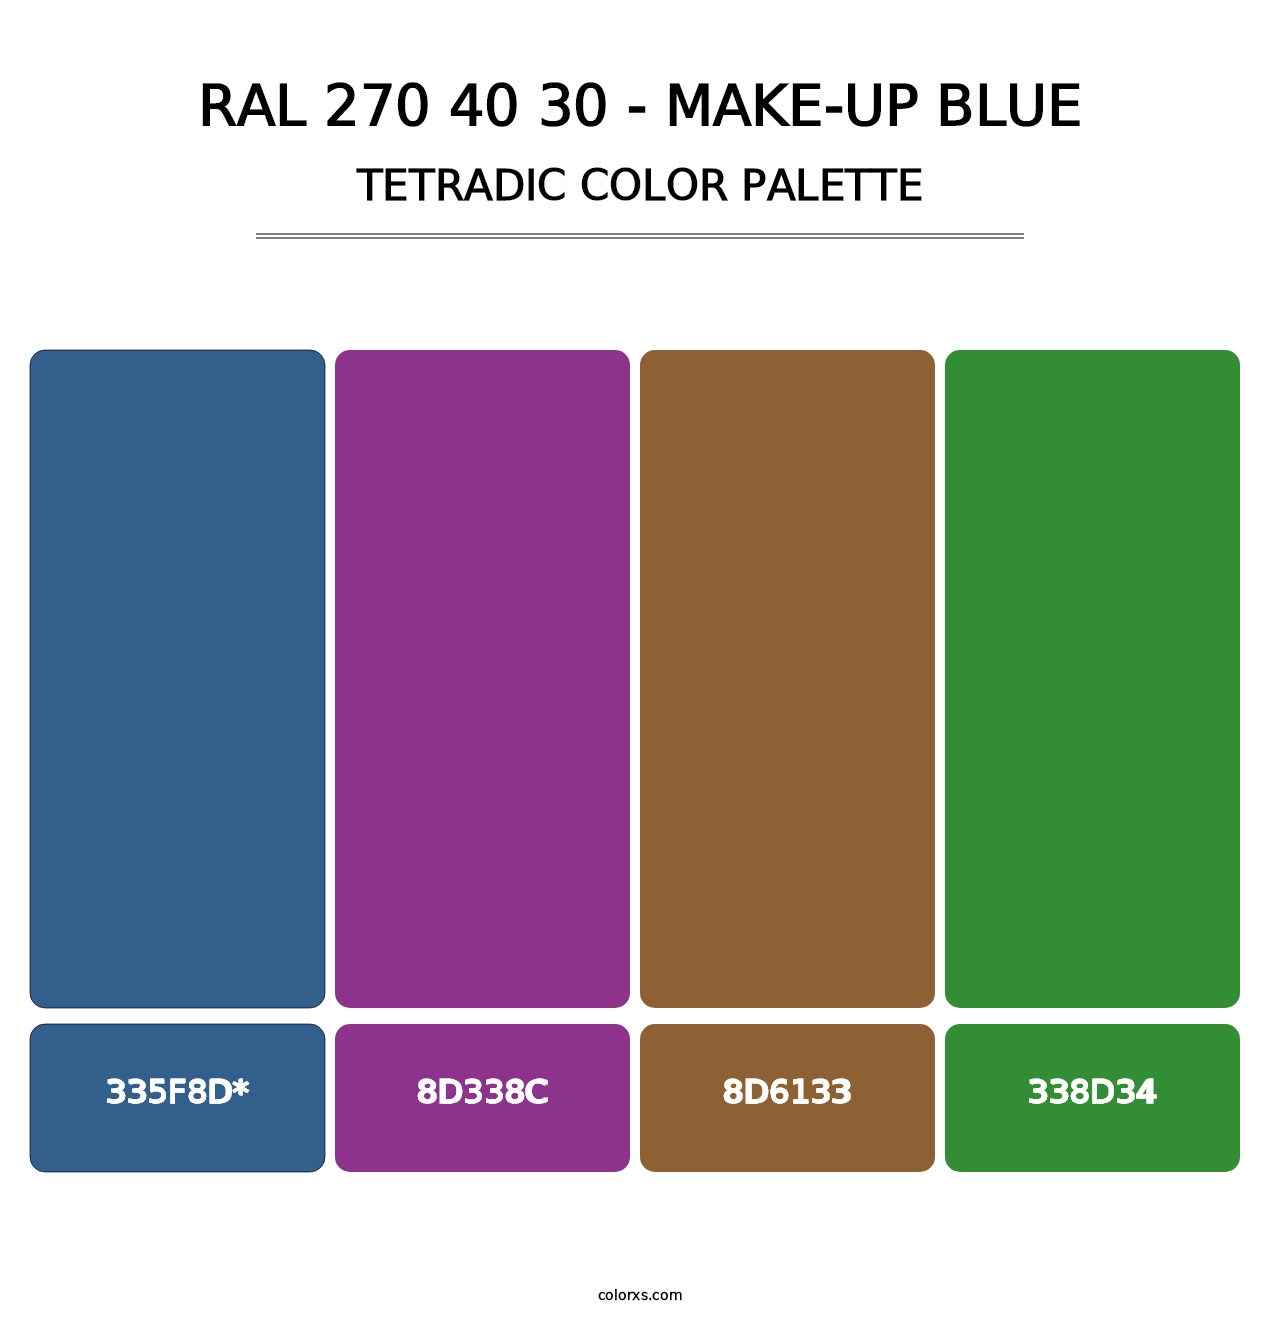 RAL 270 40 30 - Make-Up Blue - Tetradic Color Palette